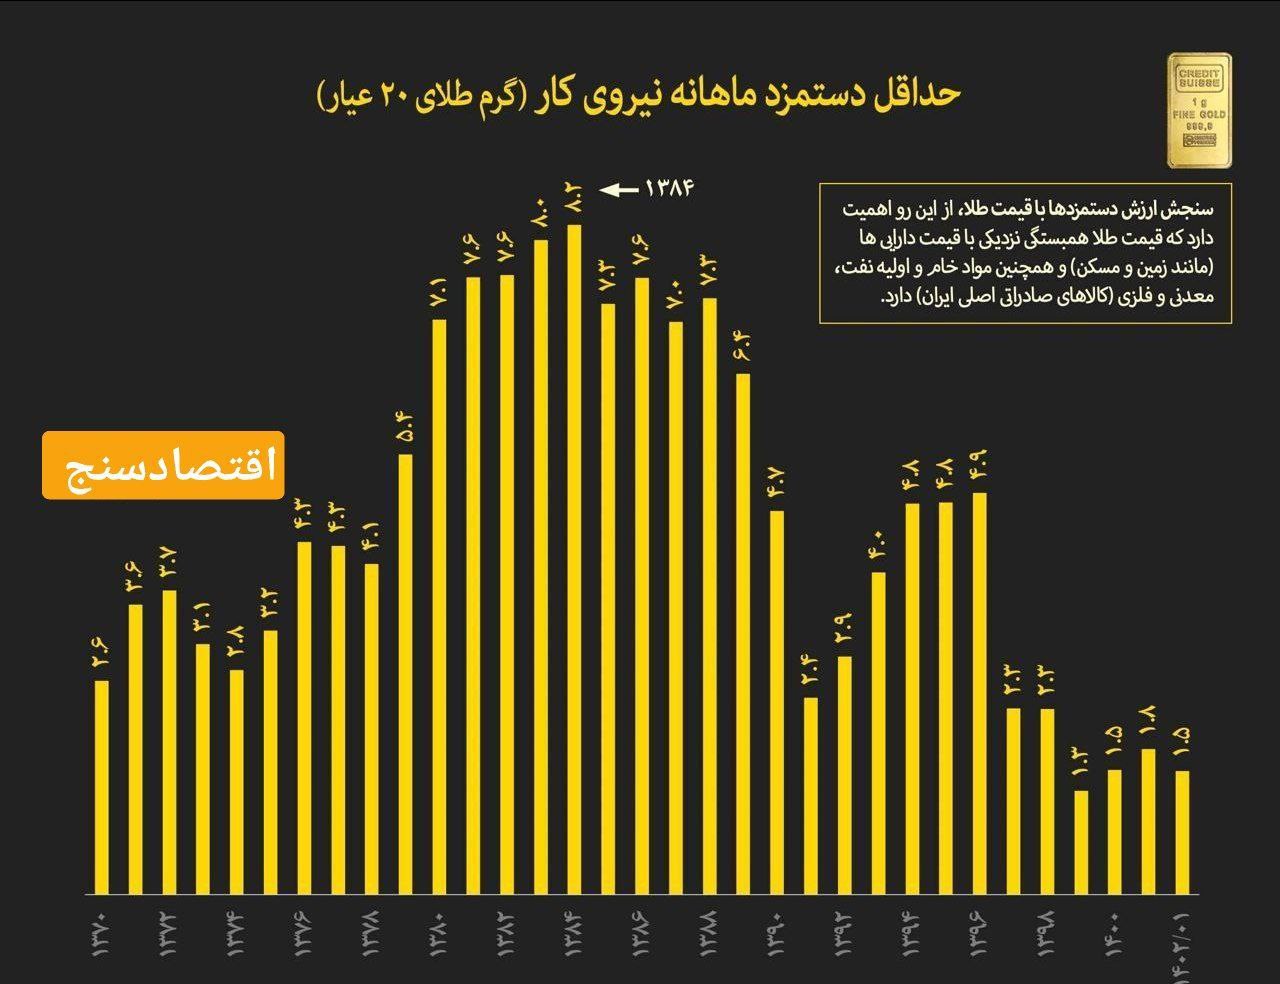 سقوط ارزش دستمزدها در ایران به پایین ترین سطح تاریخی